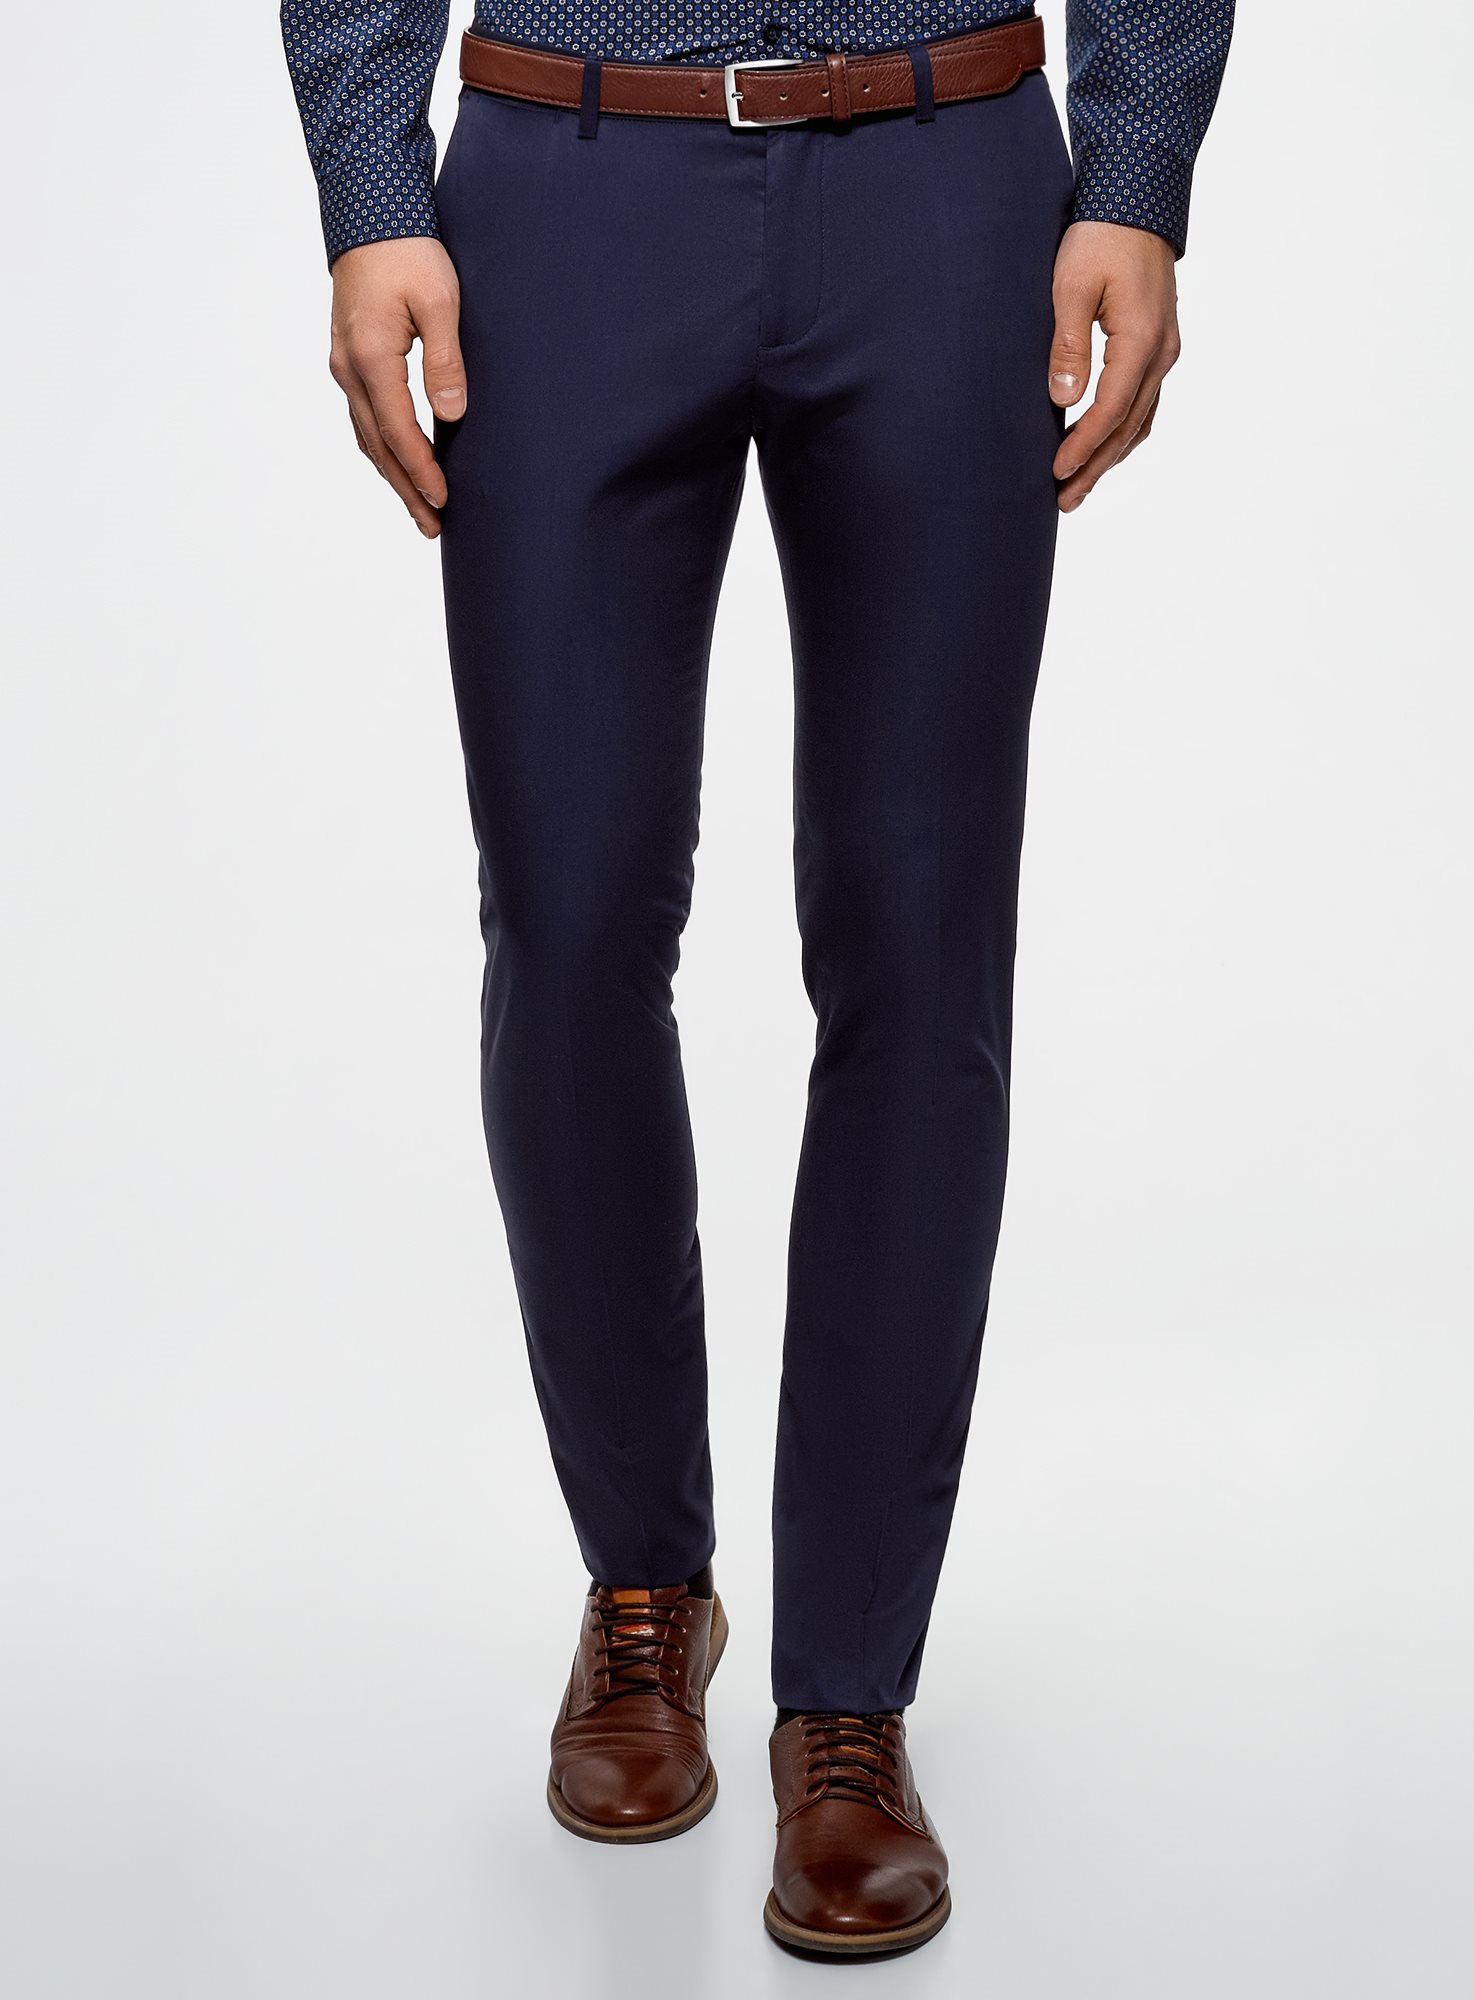 Зара мужские брюки темно синие классические